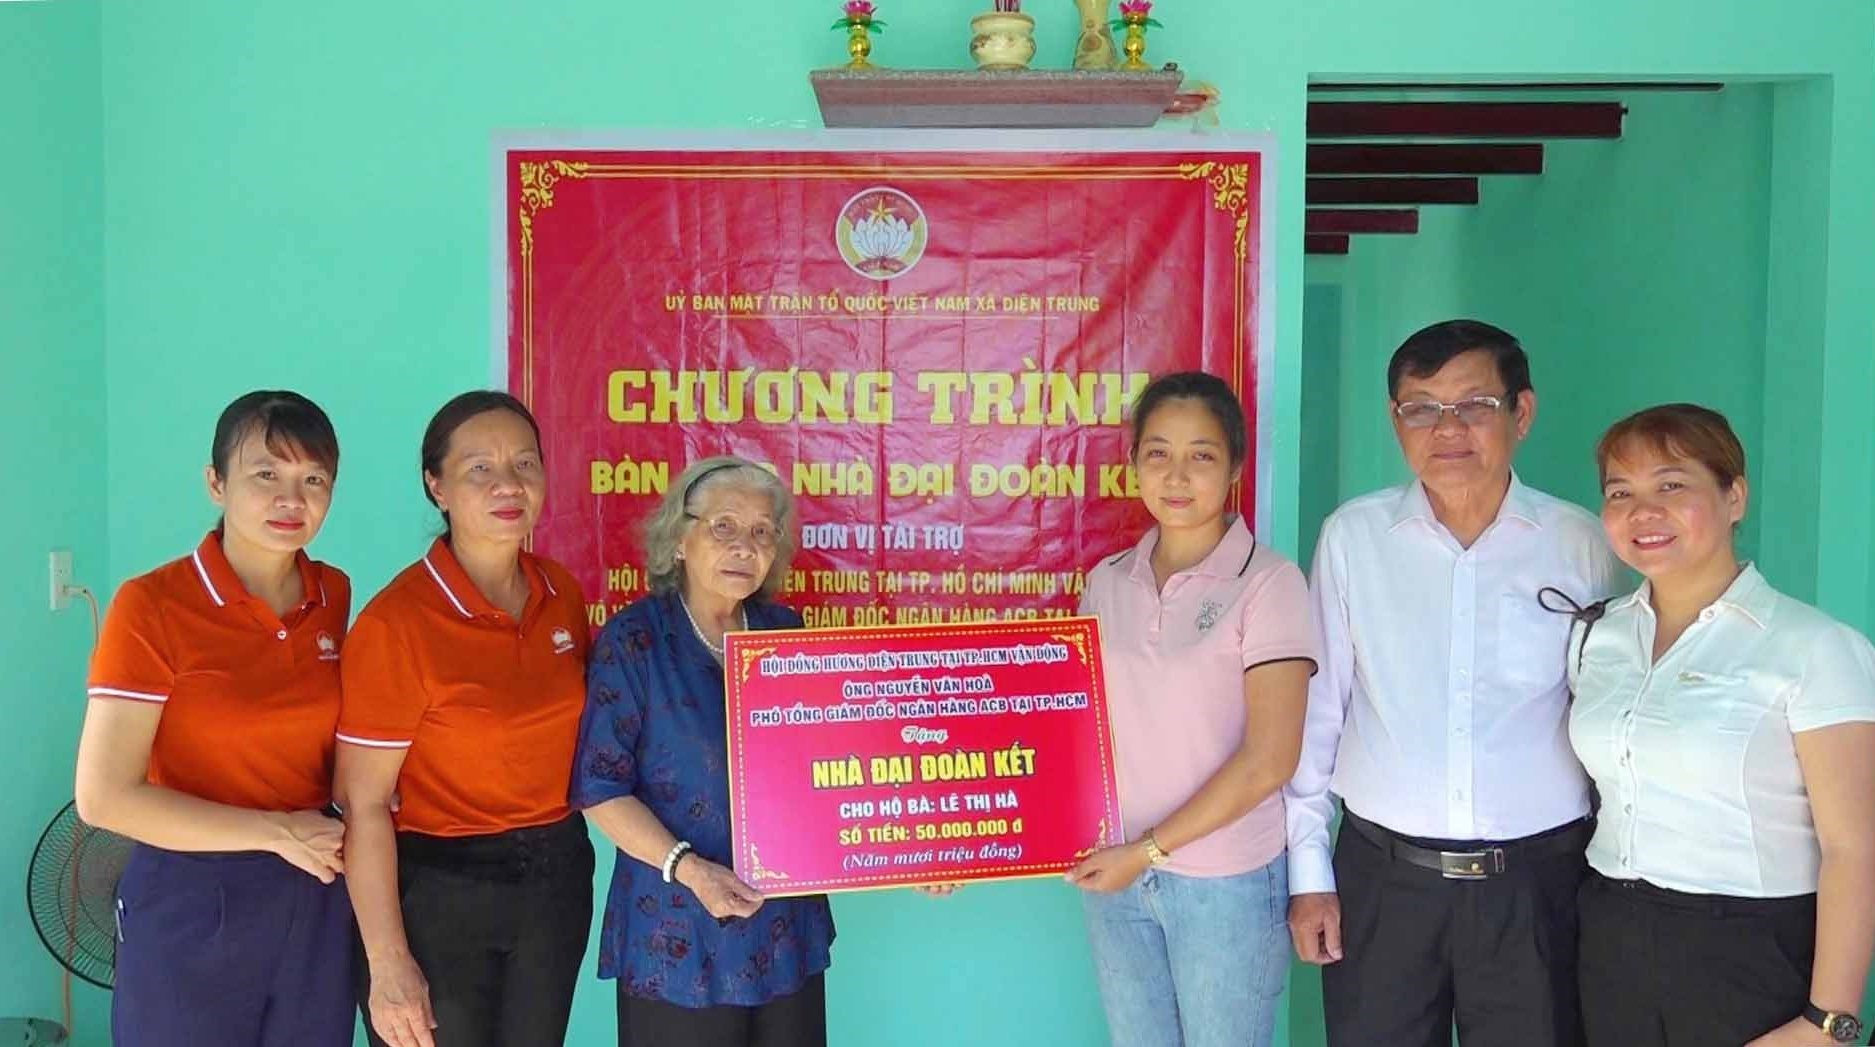 Đại diện Hội đồng hương Điện Trung tại thành phố Hồ Chí Minh và nhà tài trợ trao bảng tượng trưng cho gia đình chị Nguyễn Thị Hà.